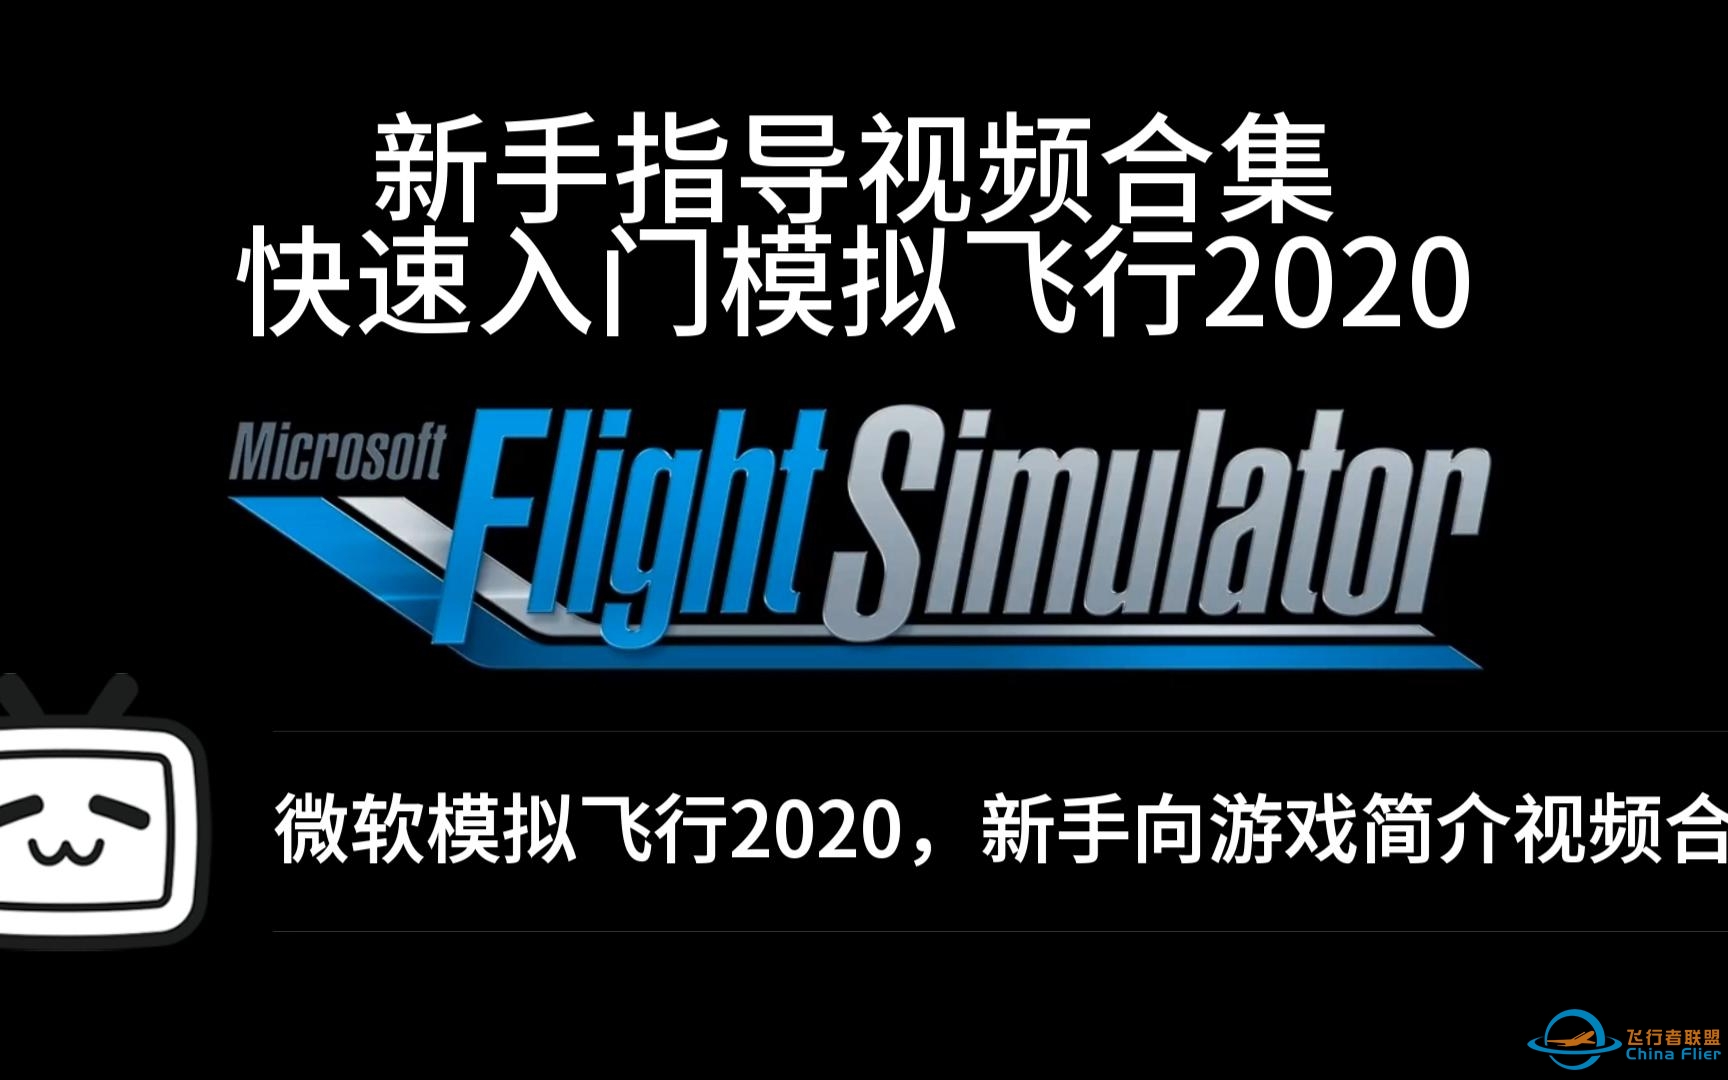 【微软飞行模拟2020】- 新手向游戏简介及指导视频合集-6838 